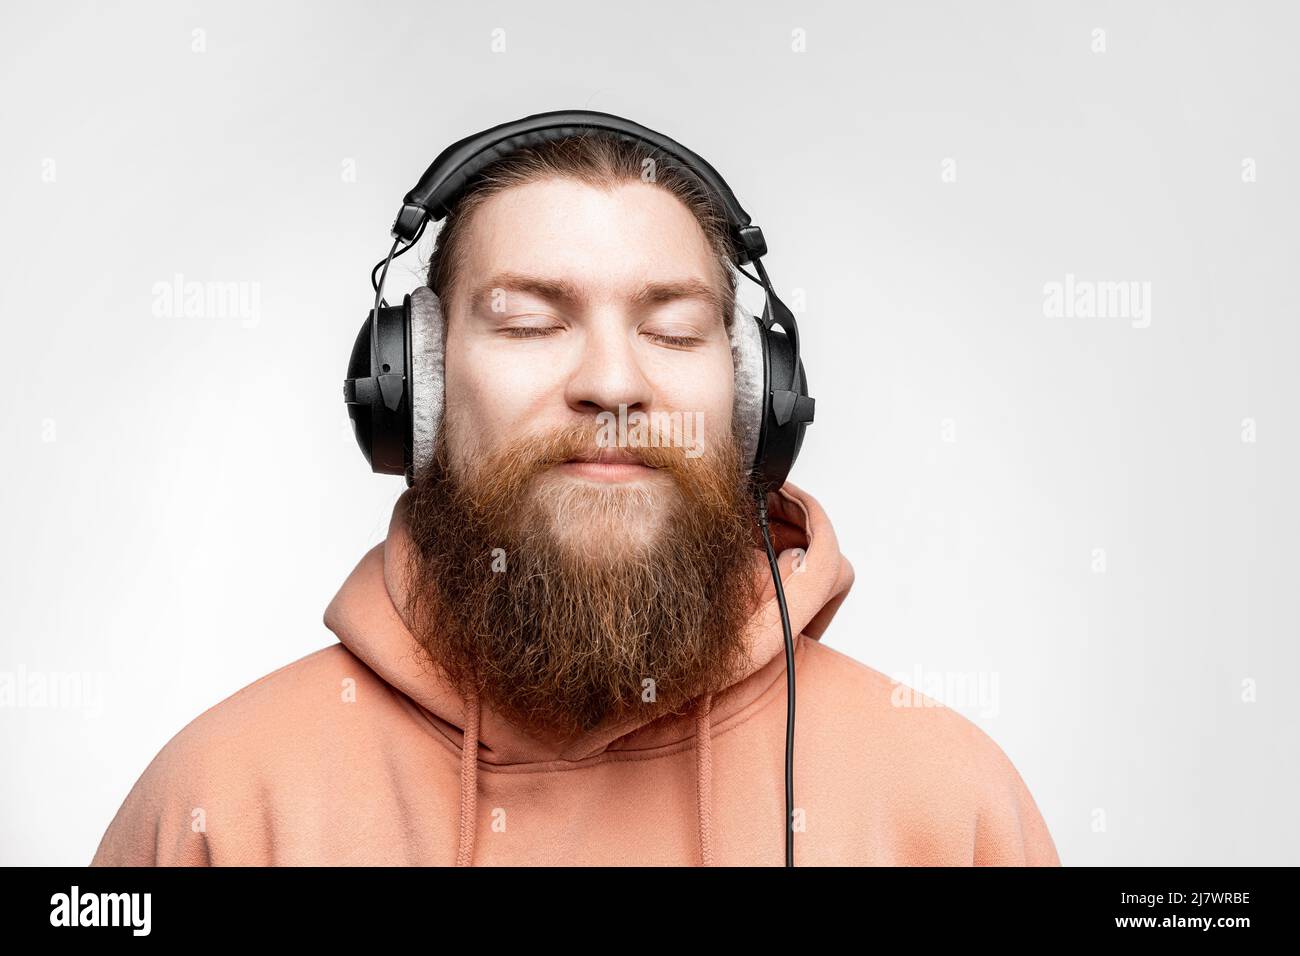 Un homme scandinave charmant et content a fermé les yeux et écoute de la musique dans des écouteurs professionnels isolés sur fond gris. Joyeux gars au gingembre Banque D'Images